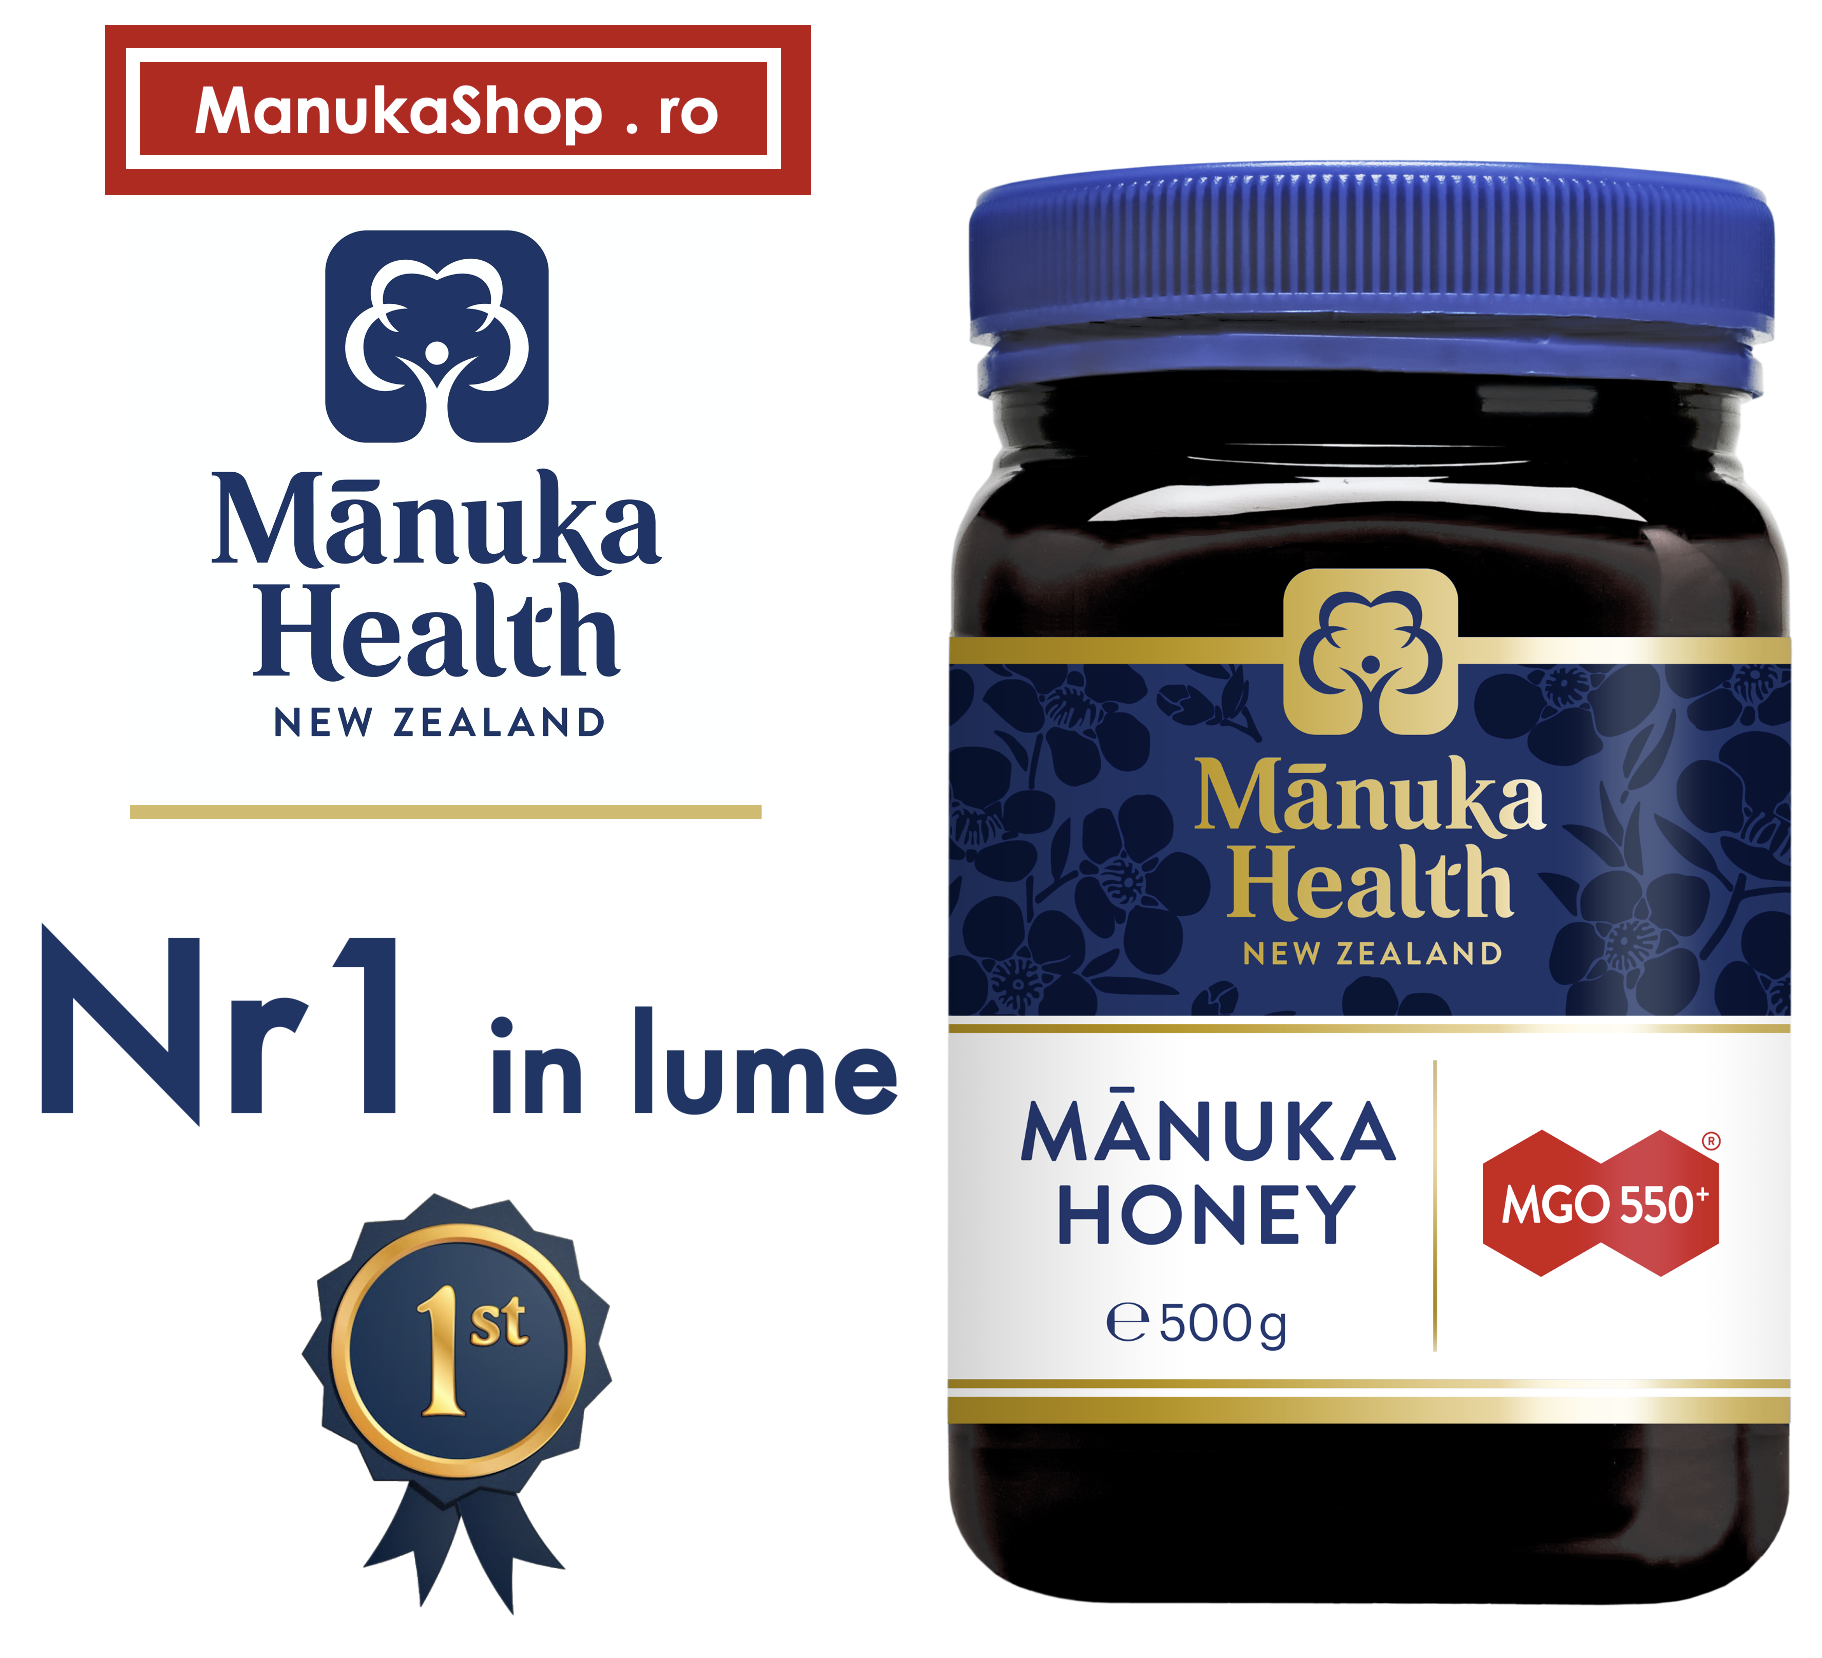 Care miere de Manuka este mai buna?